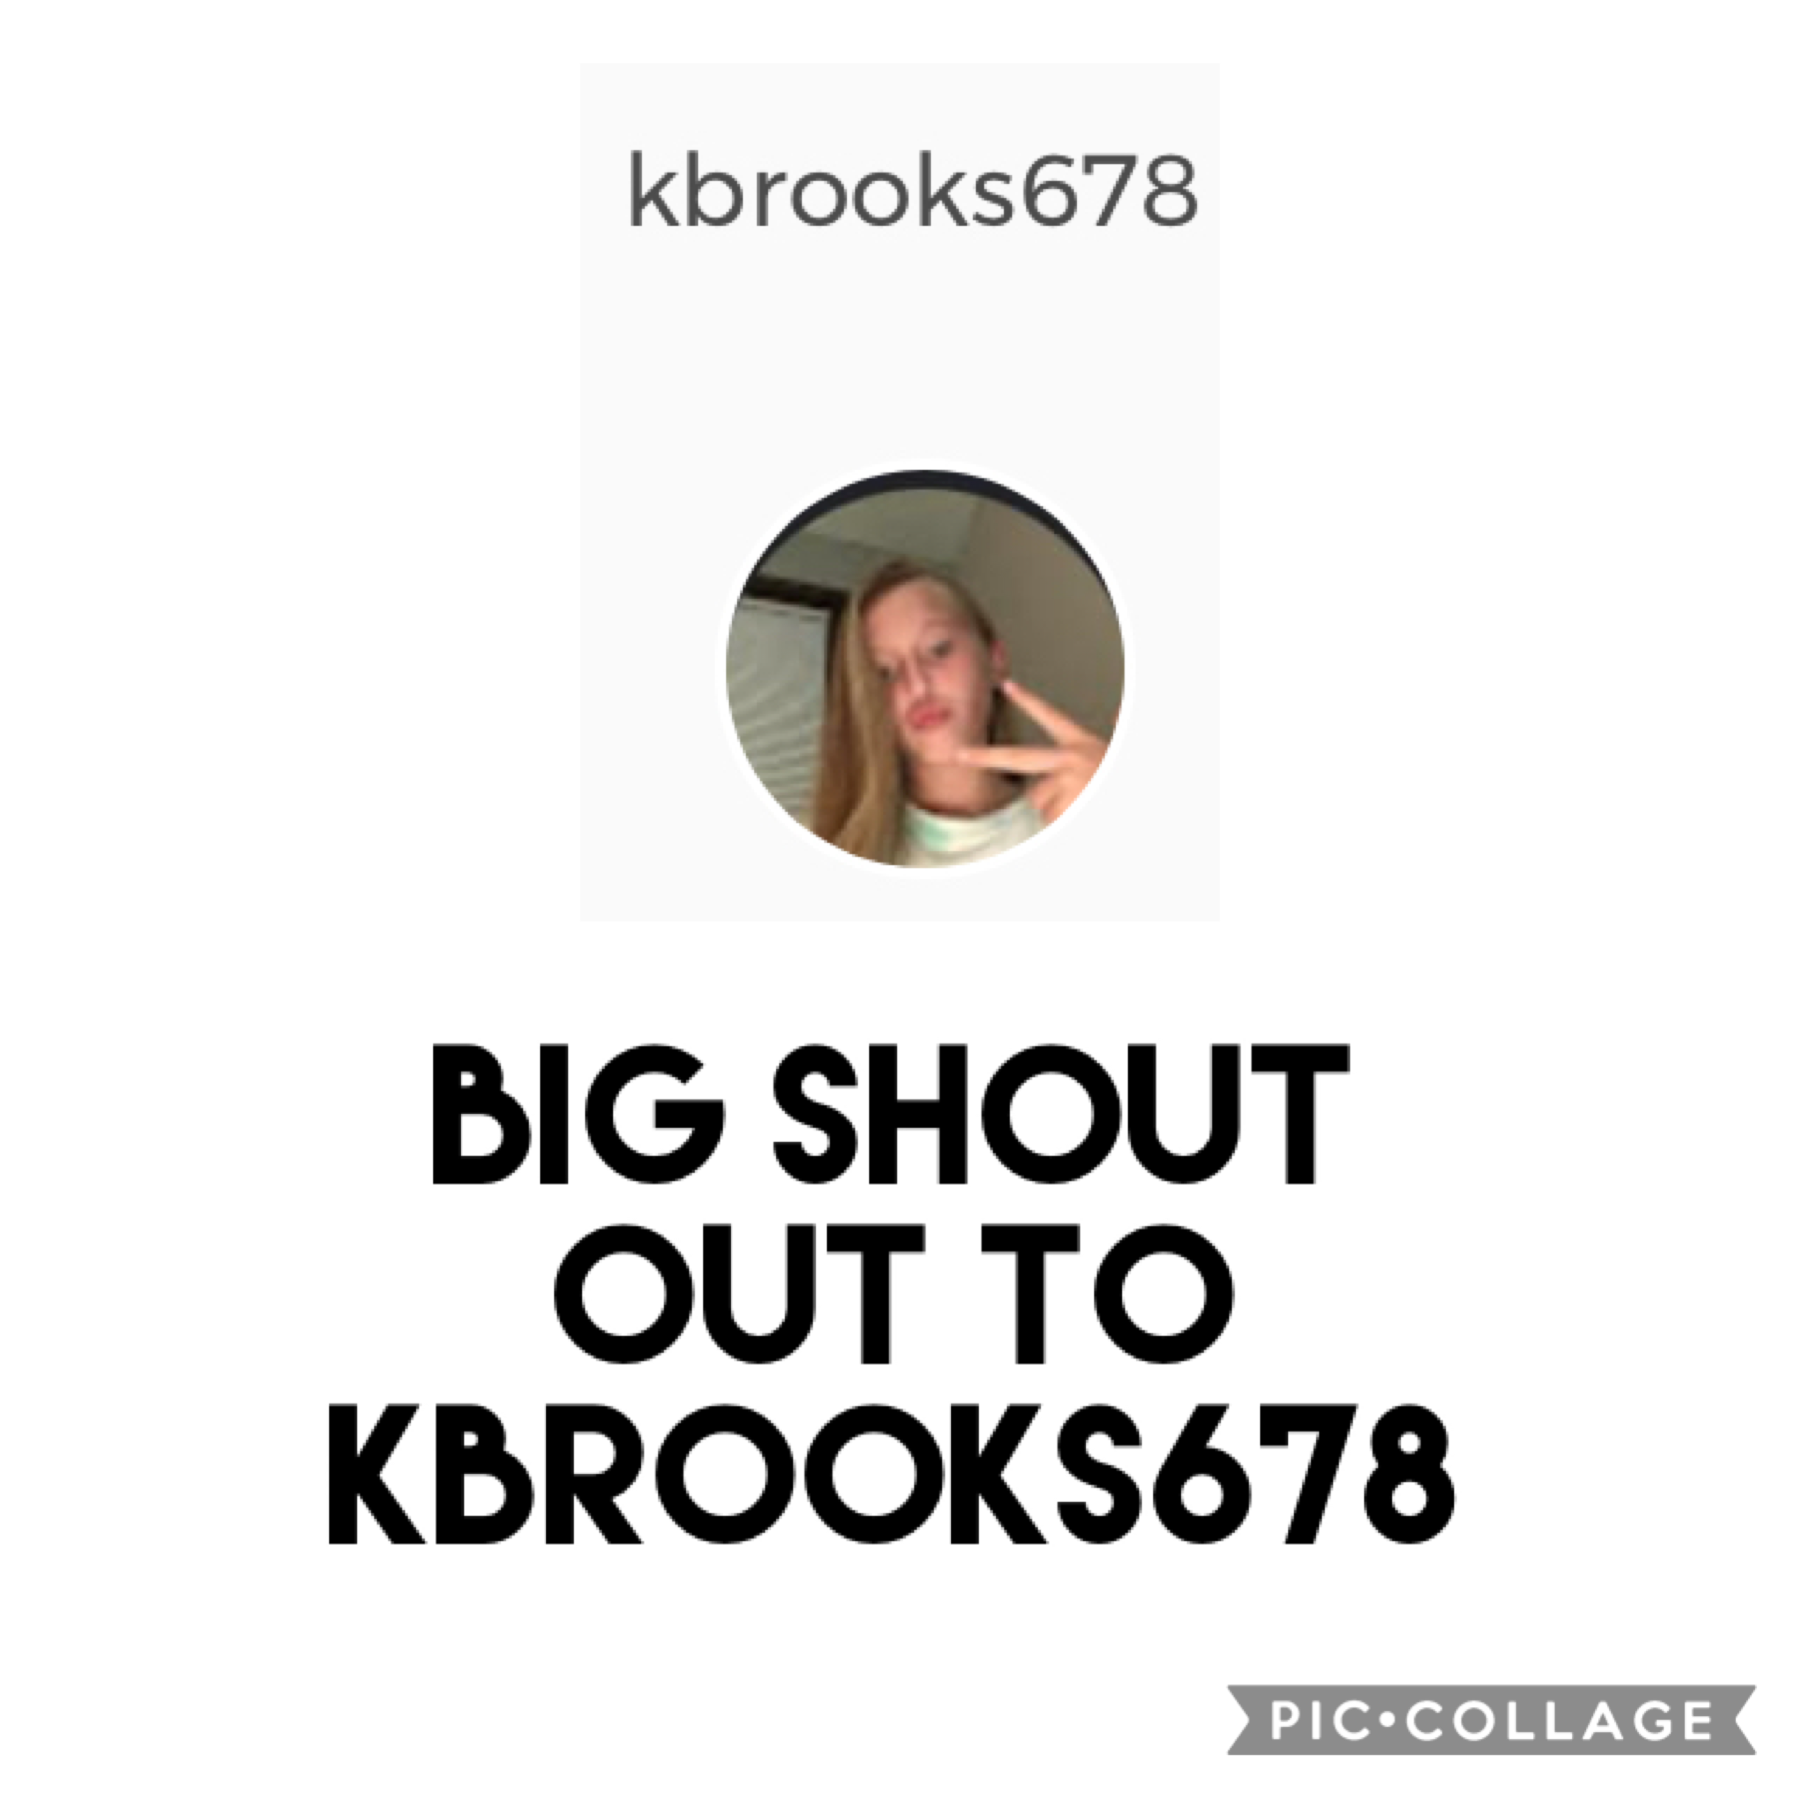 Go and follow kbrook678!